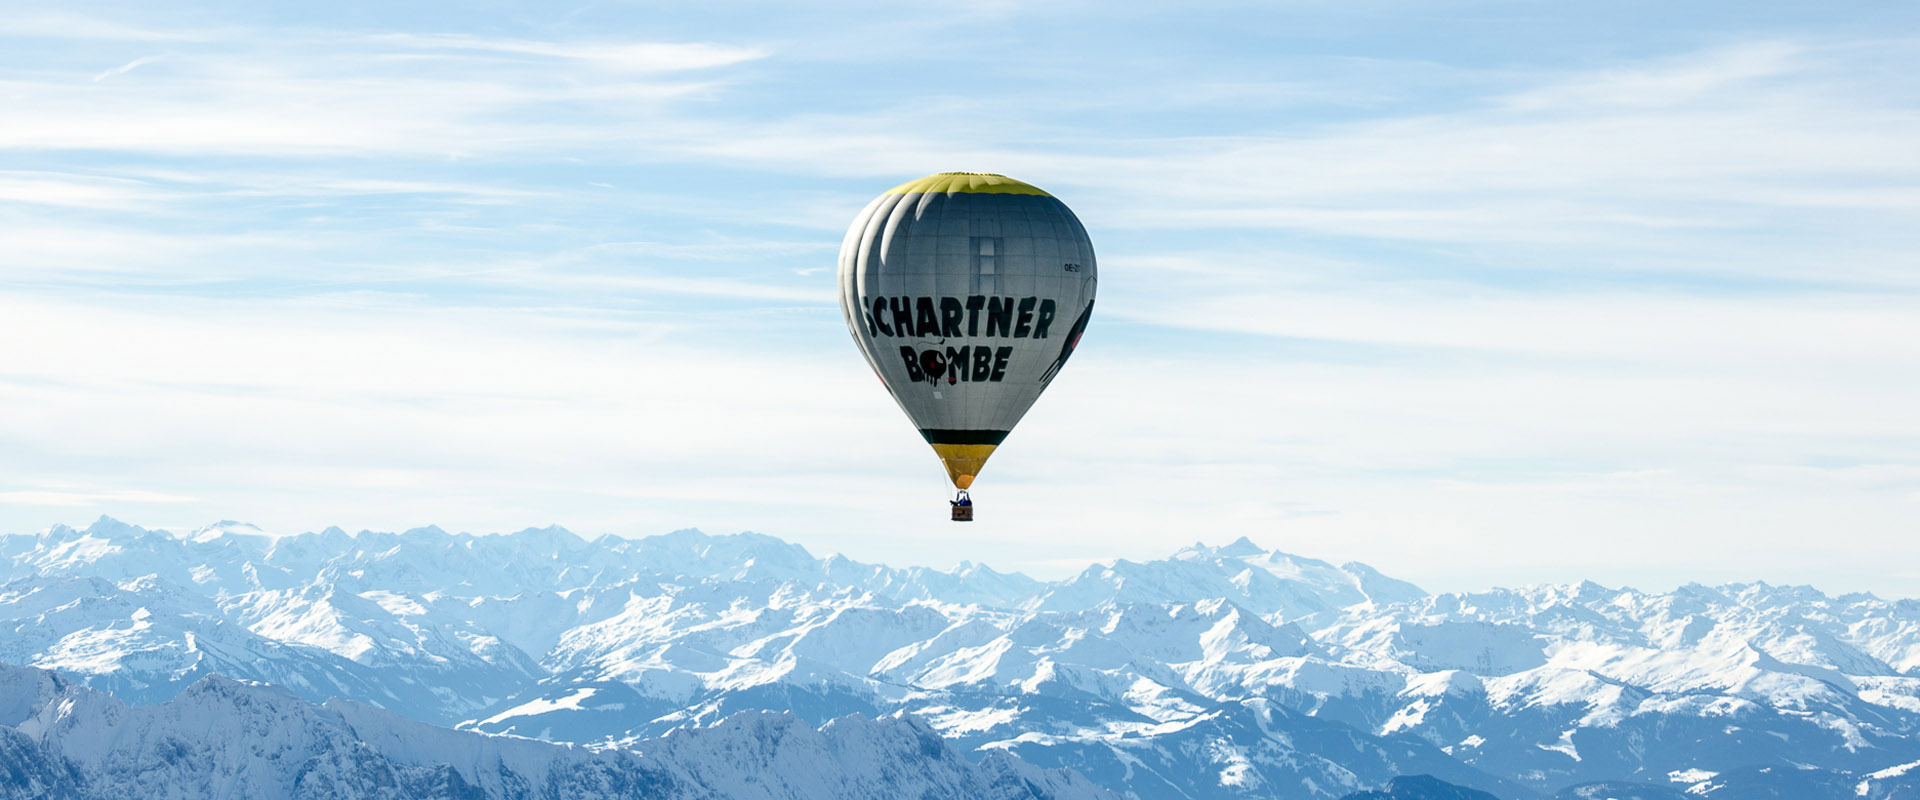 ballonfahren in österreich